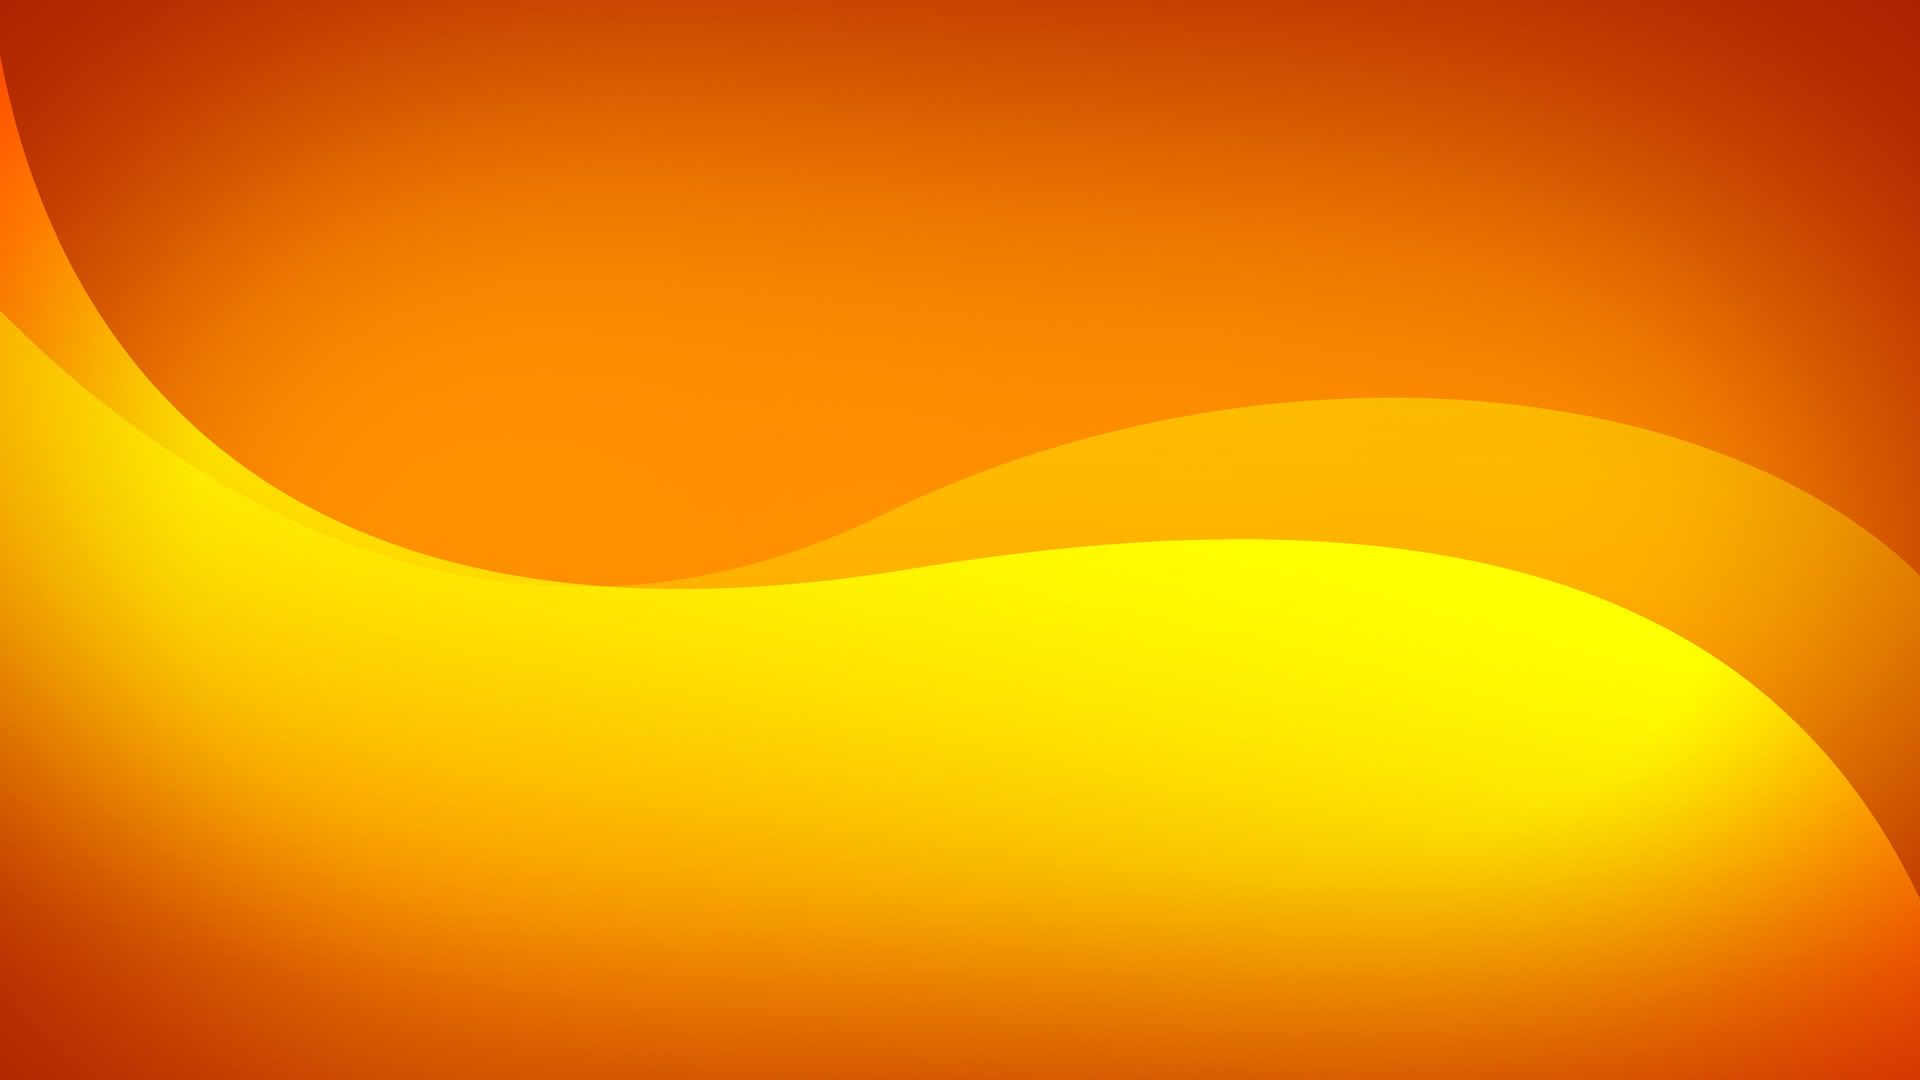 عکس گرافیکی نارنجی تماشایی با طرح مارپیچی زیبا